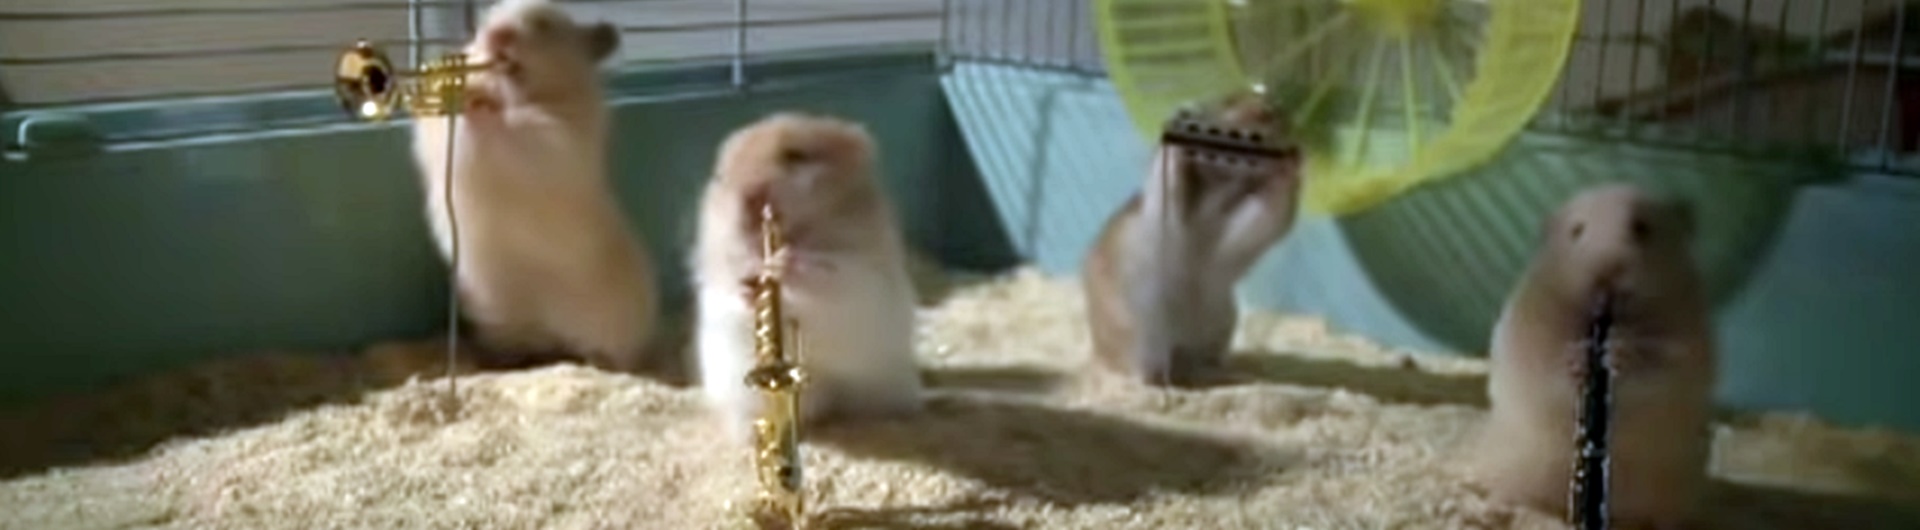 Hamster jazz-band w reklamie